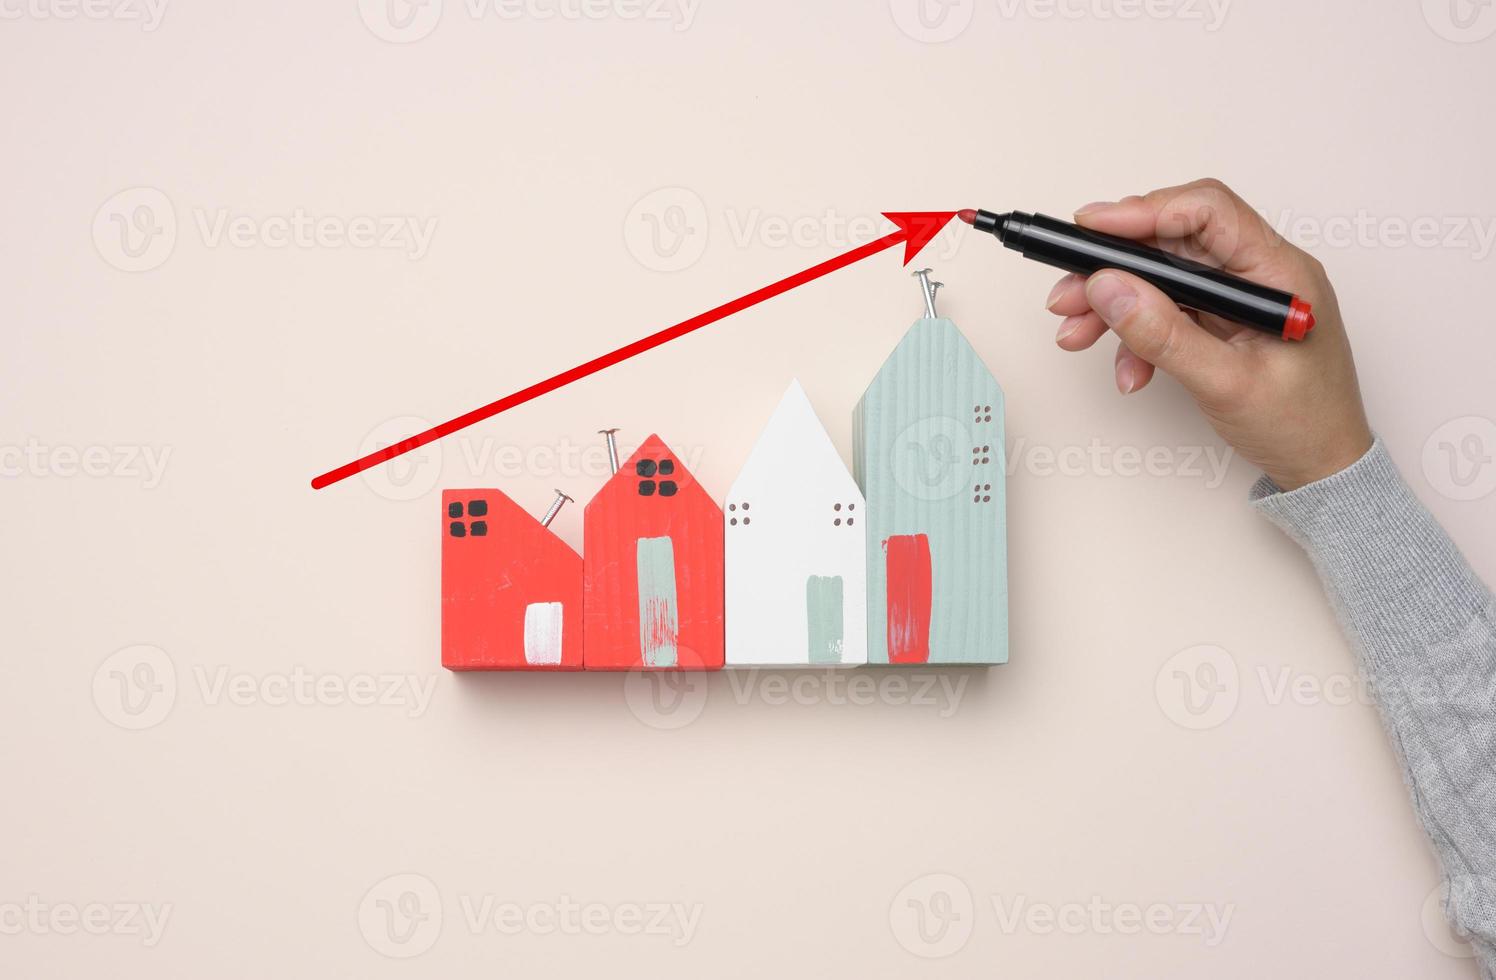 una casa de madera en miniatura y la mano de una mujer dibujan un gráfico con indicadores crecientes. foto